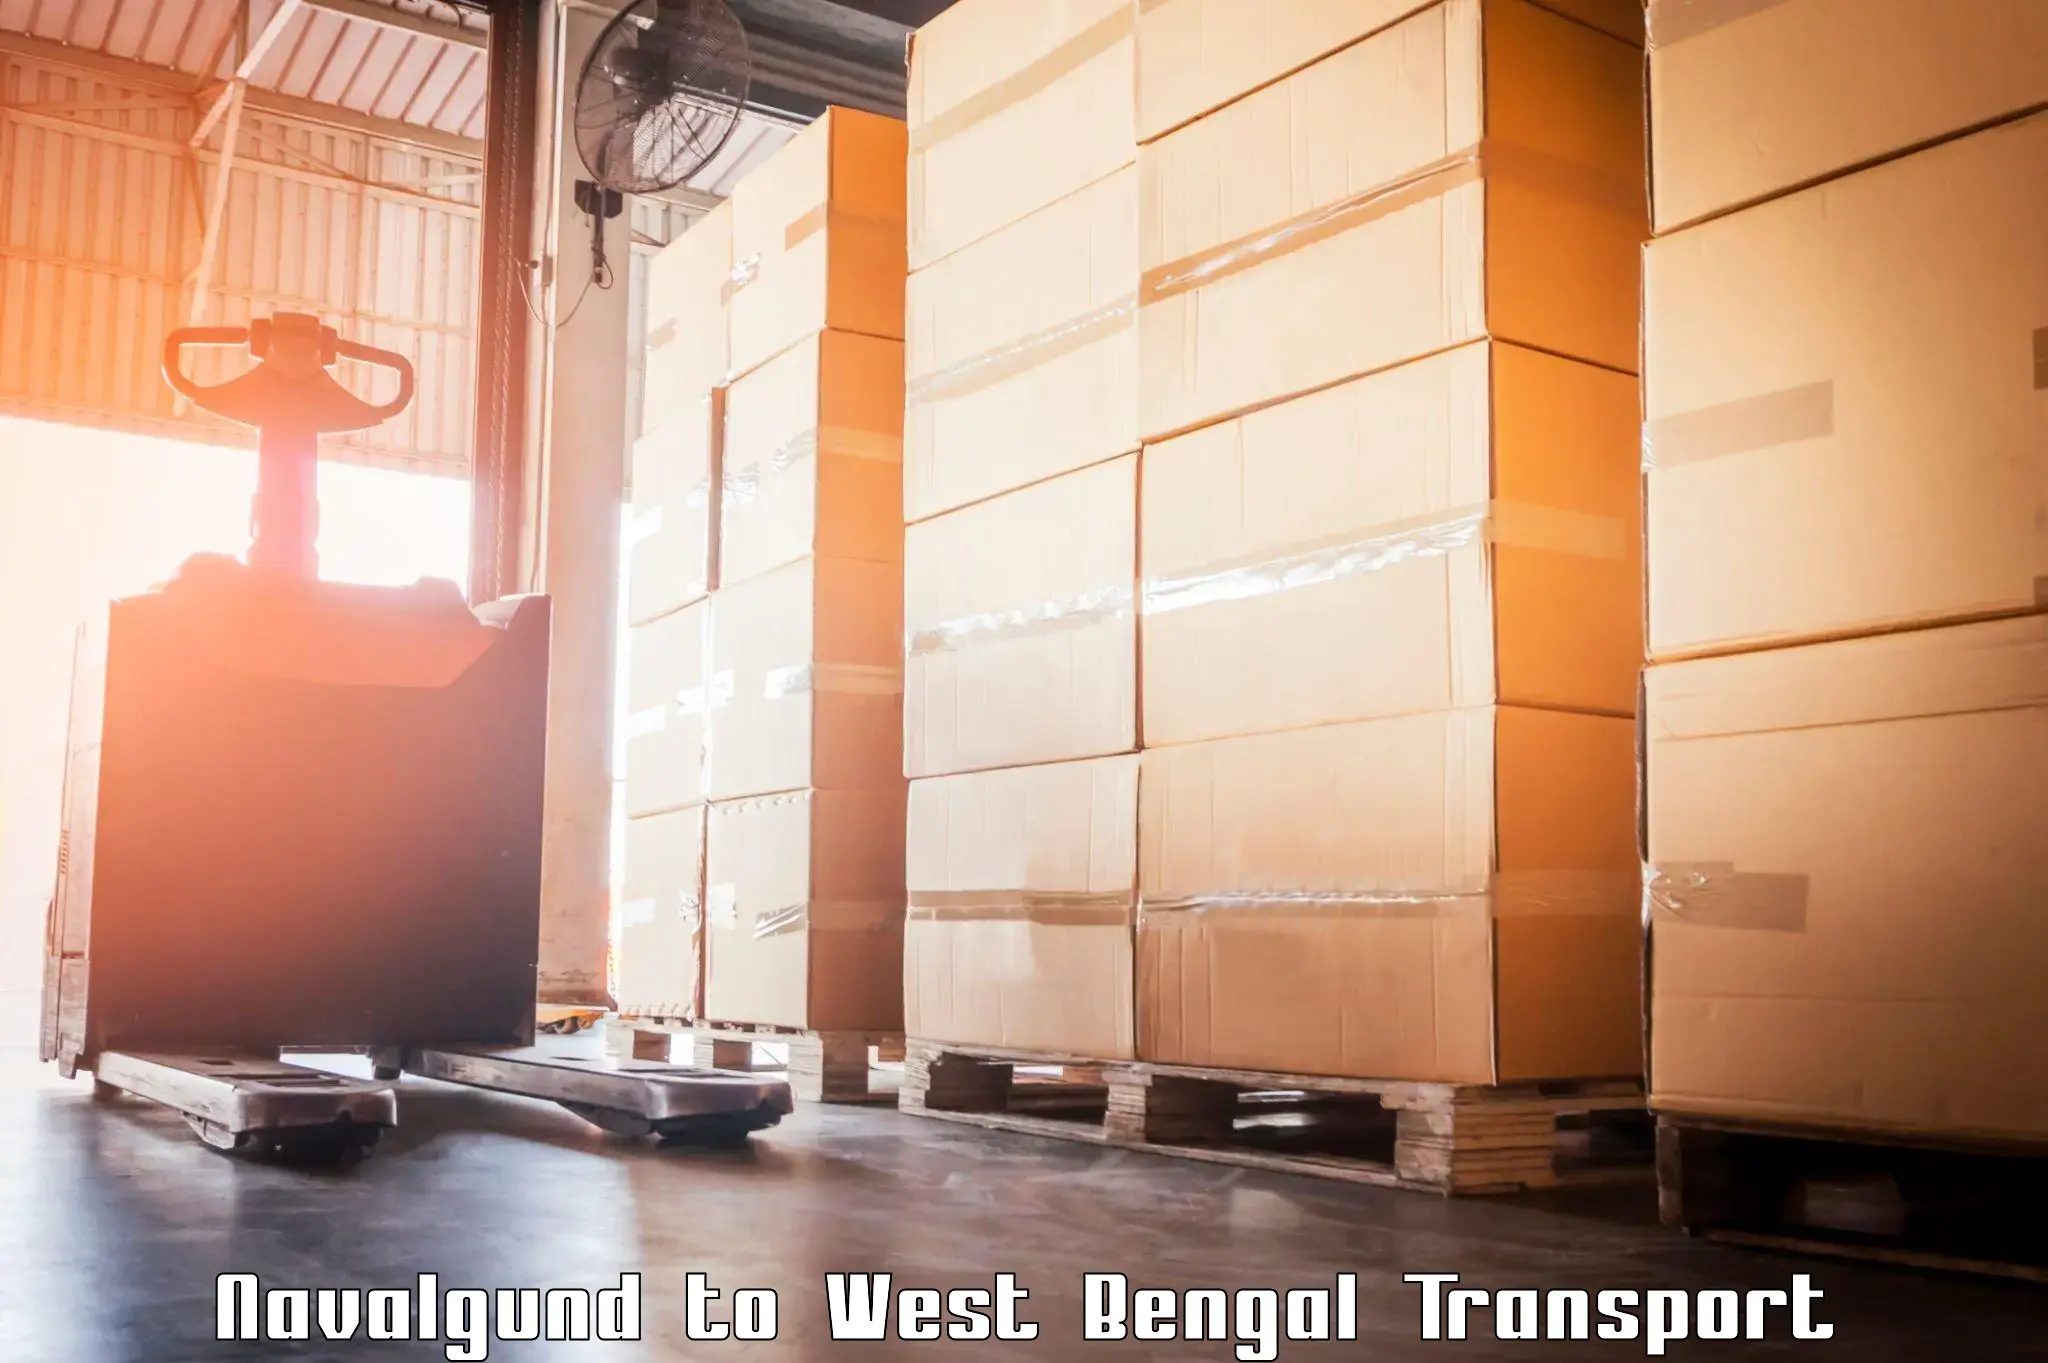 Cargo train transport services Navalgund to IIT Kharagpur